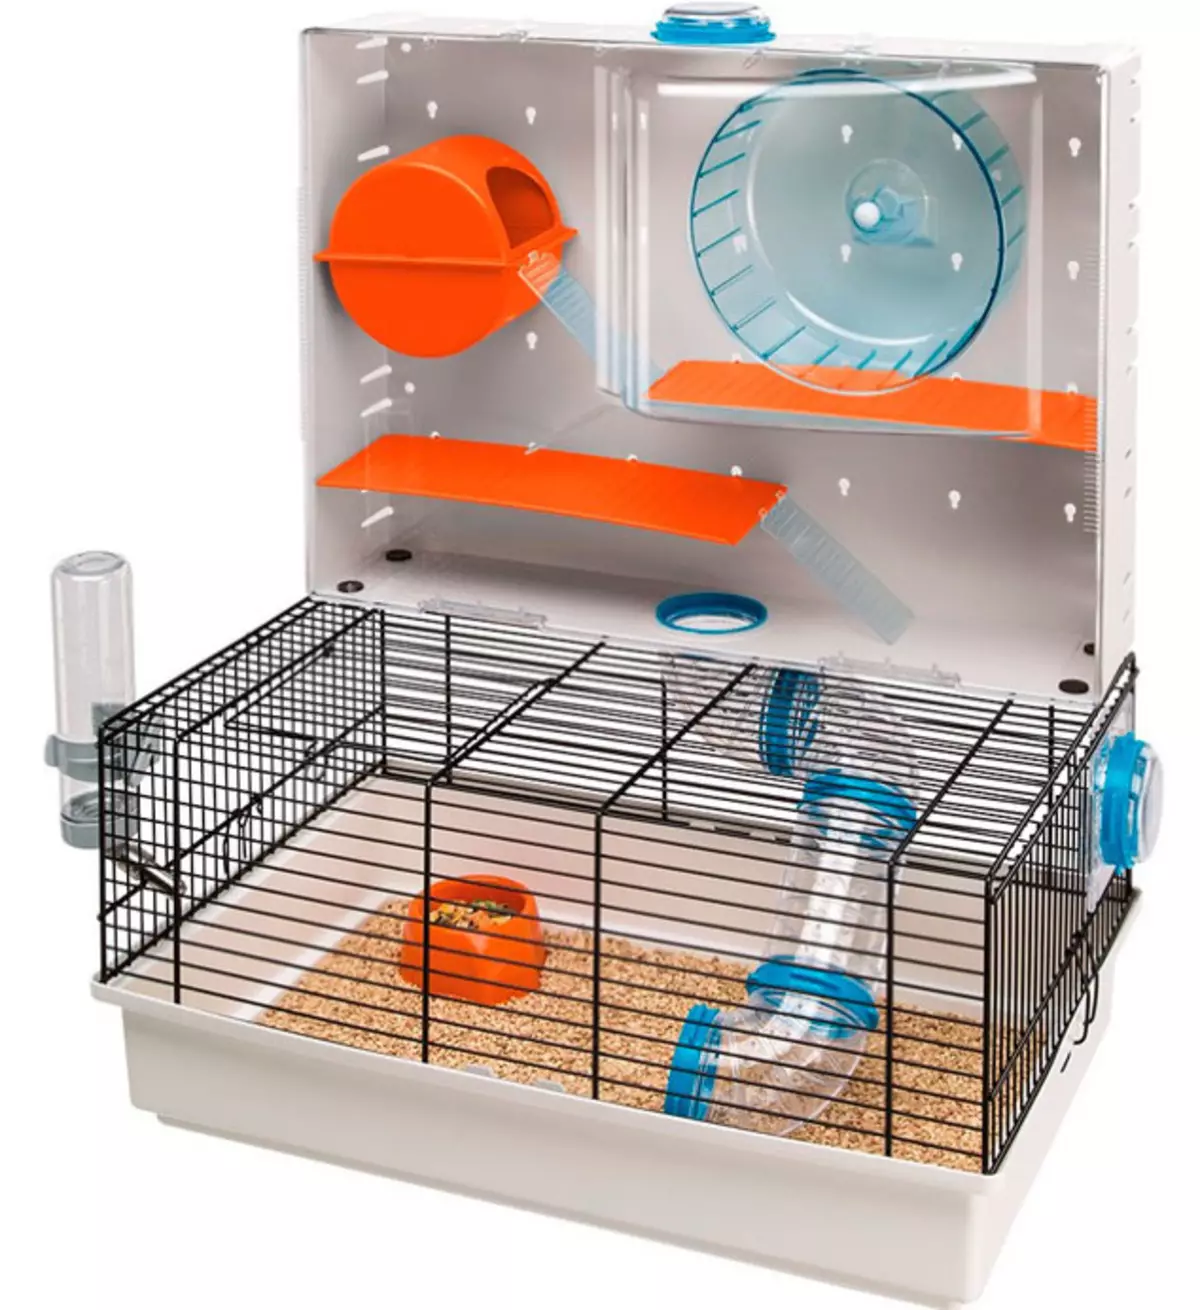 ہیمٹرٹر کی دیکھ بھال کیسے کریں؟ گھر میں ایک ہیمٹر کو مناسب طریقے سے کیسے برقرار رکھنا ہے؟ گھر میں چھوٹے hamsters کے لئے دیکھ بھال کی ہدایات 11736_6